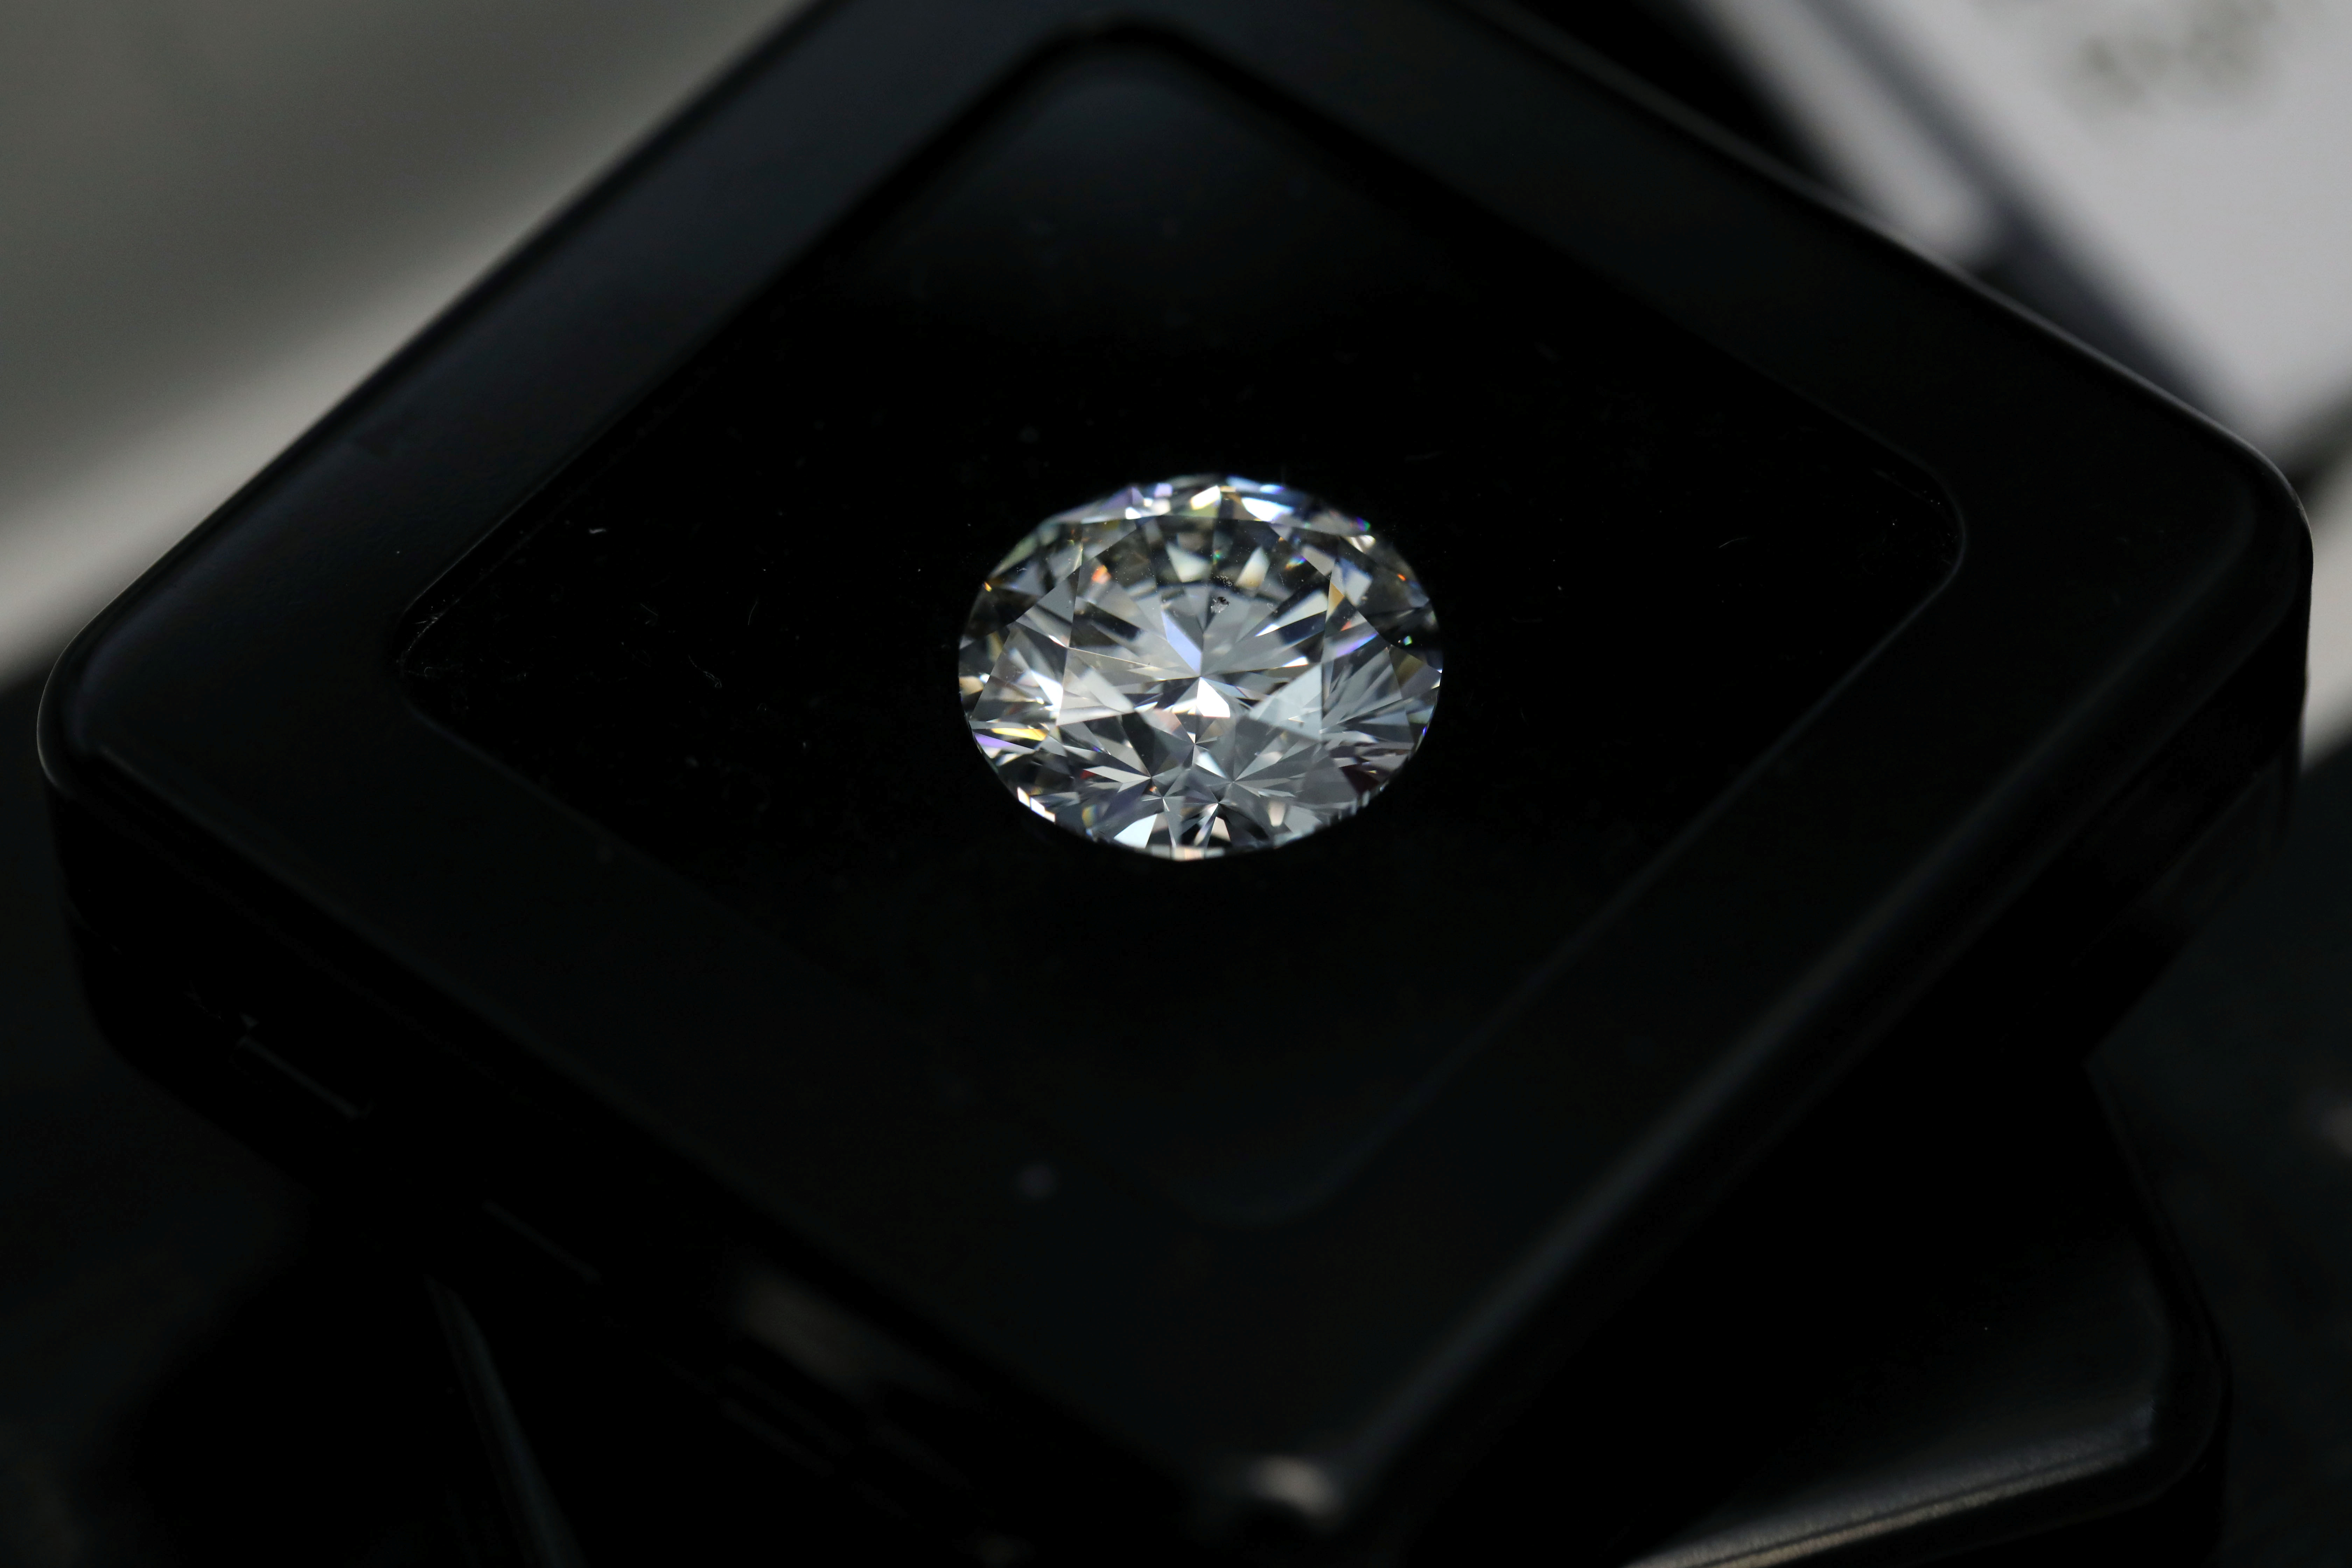 Dubai diamond market to shine on UAE-Israel deal